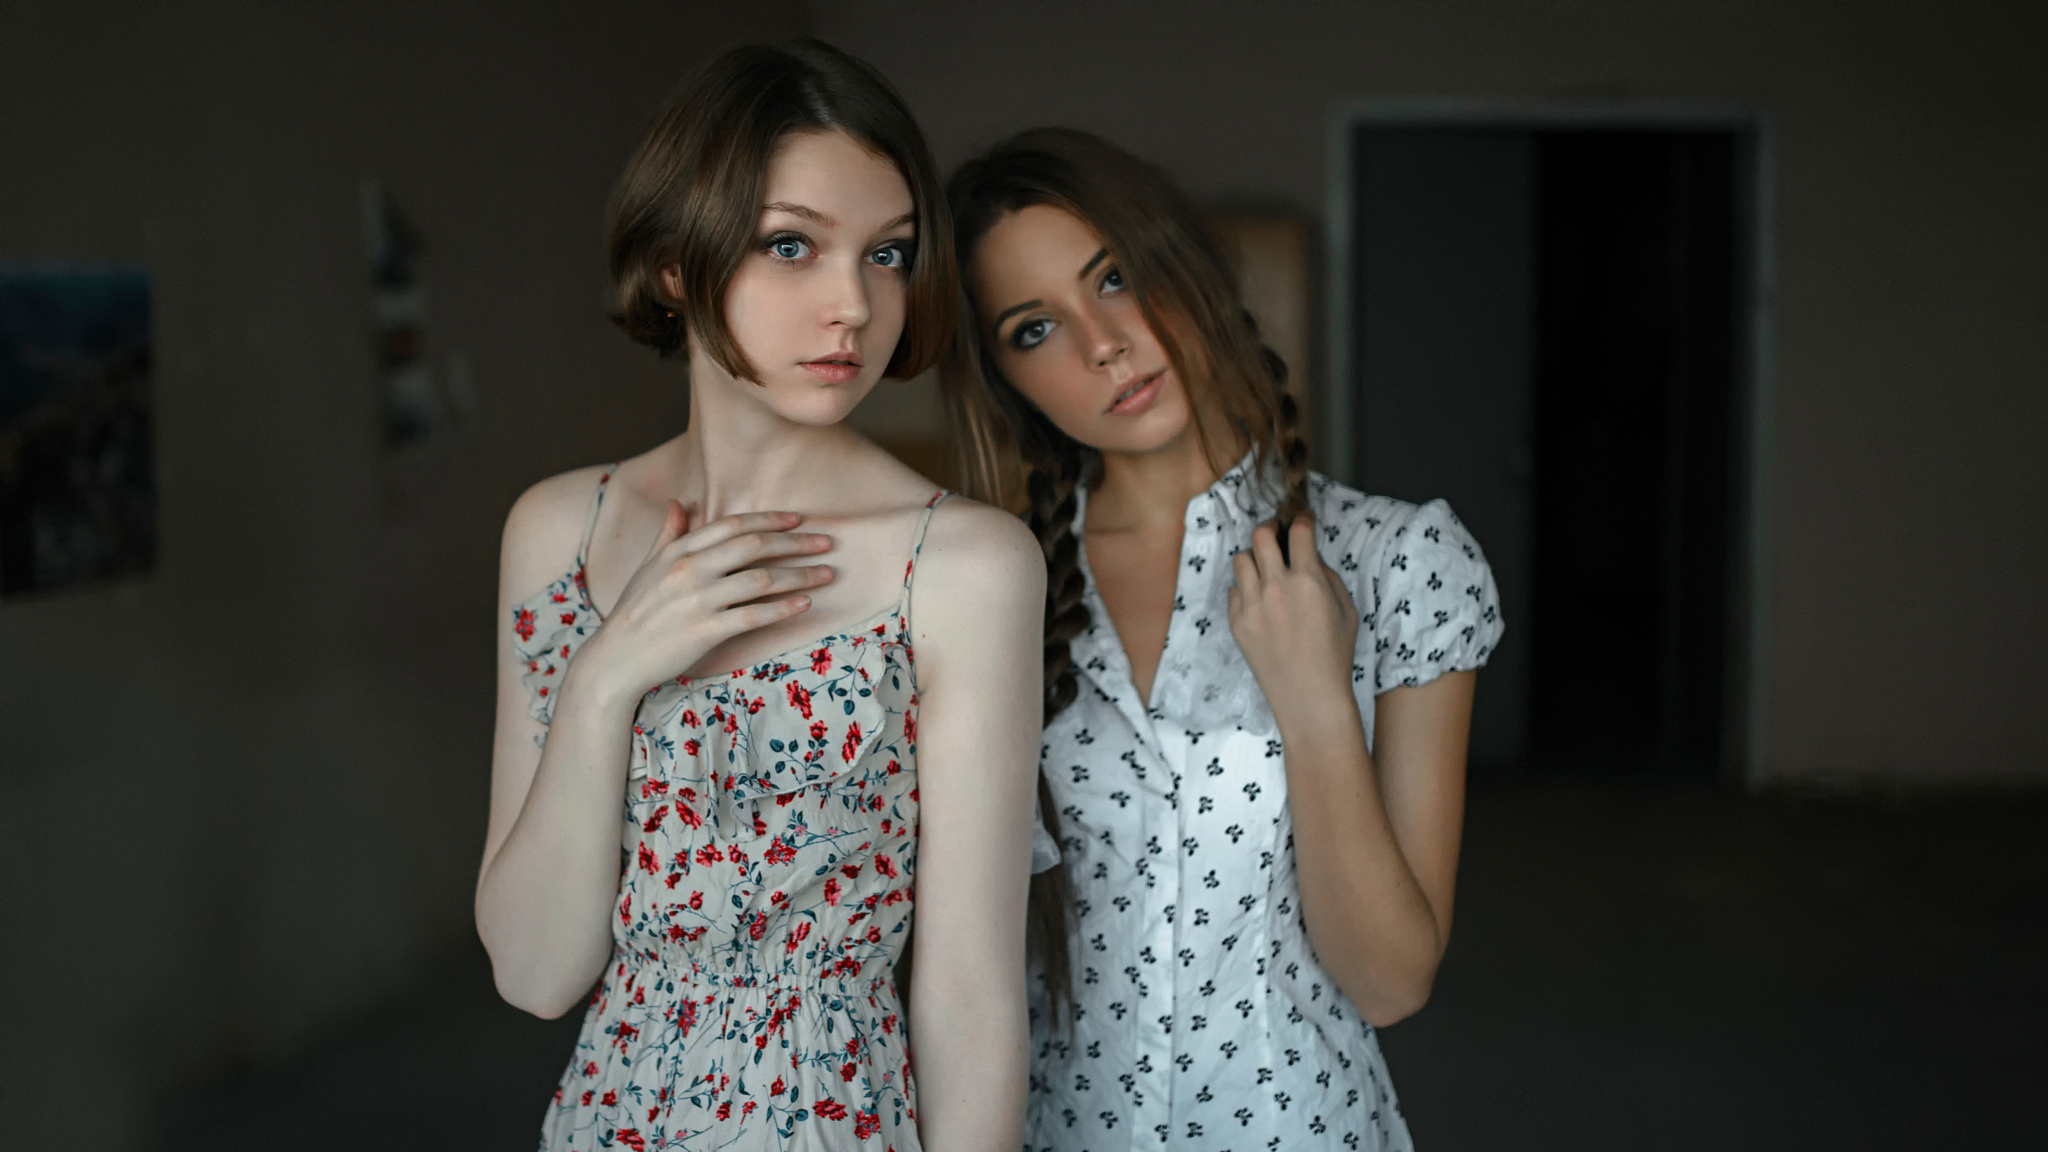 совсем юные девочки в порно русское фото 70